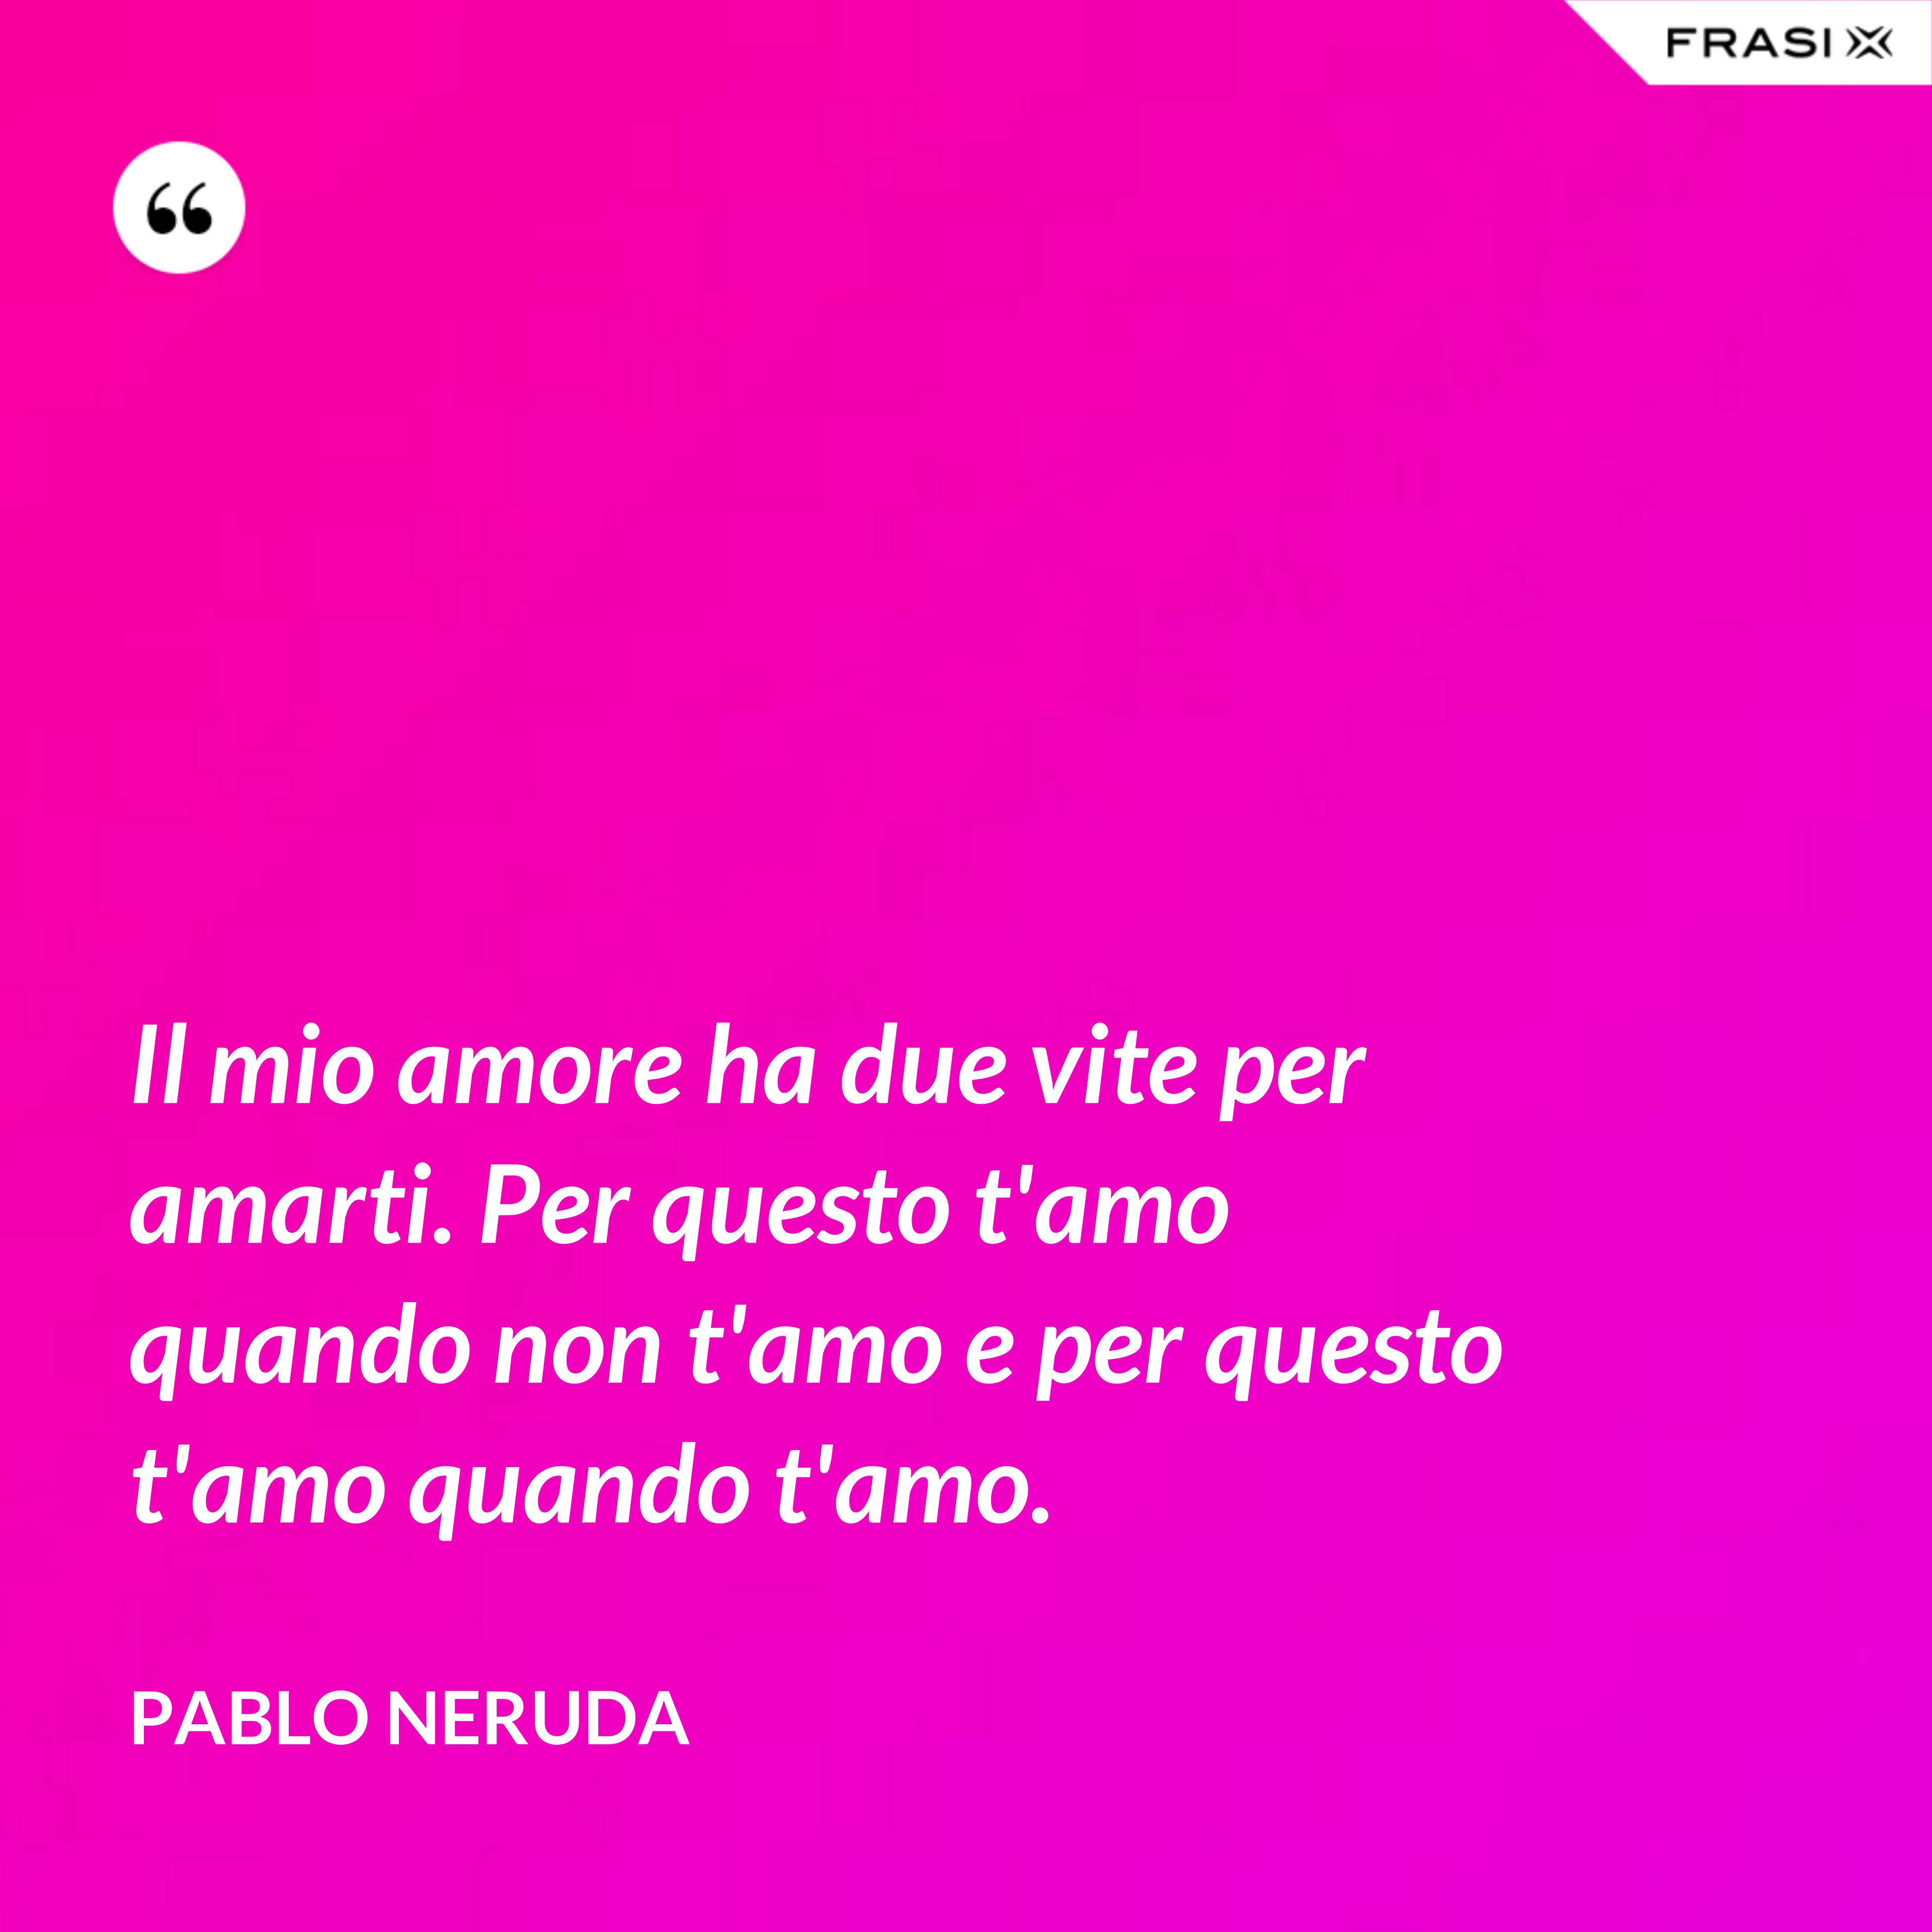 Il mio amore ha due vite per amarti. Per questo t'amo quando non t'amo e per questo t'amo quando t'amo. - Pablo Neruda